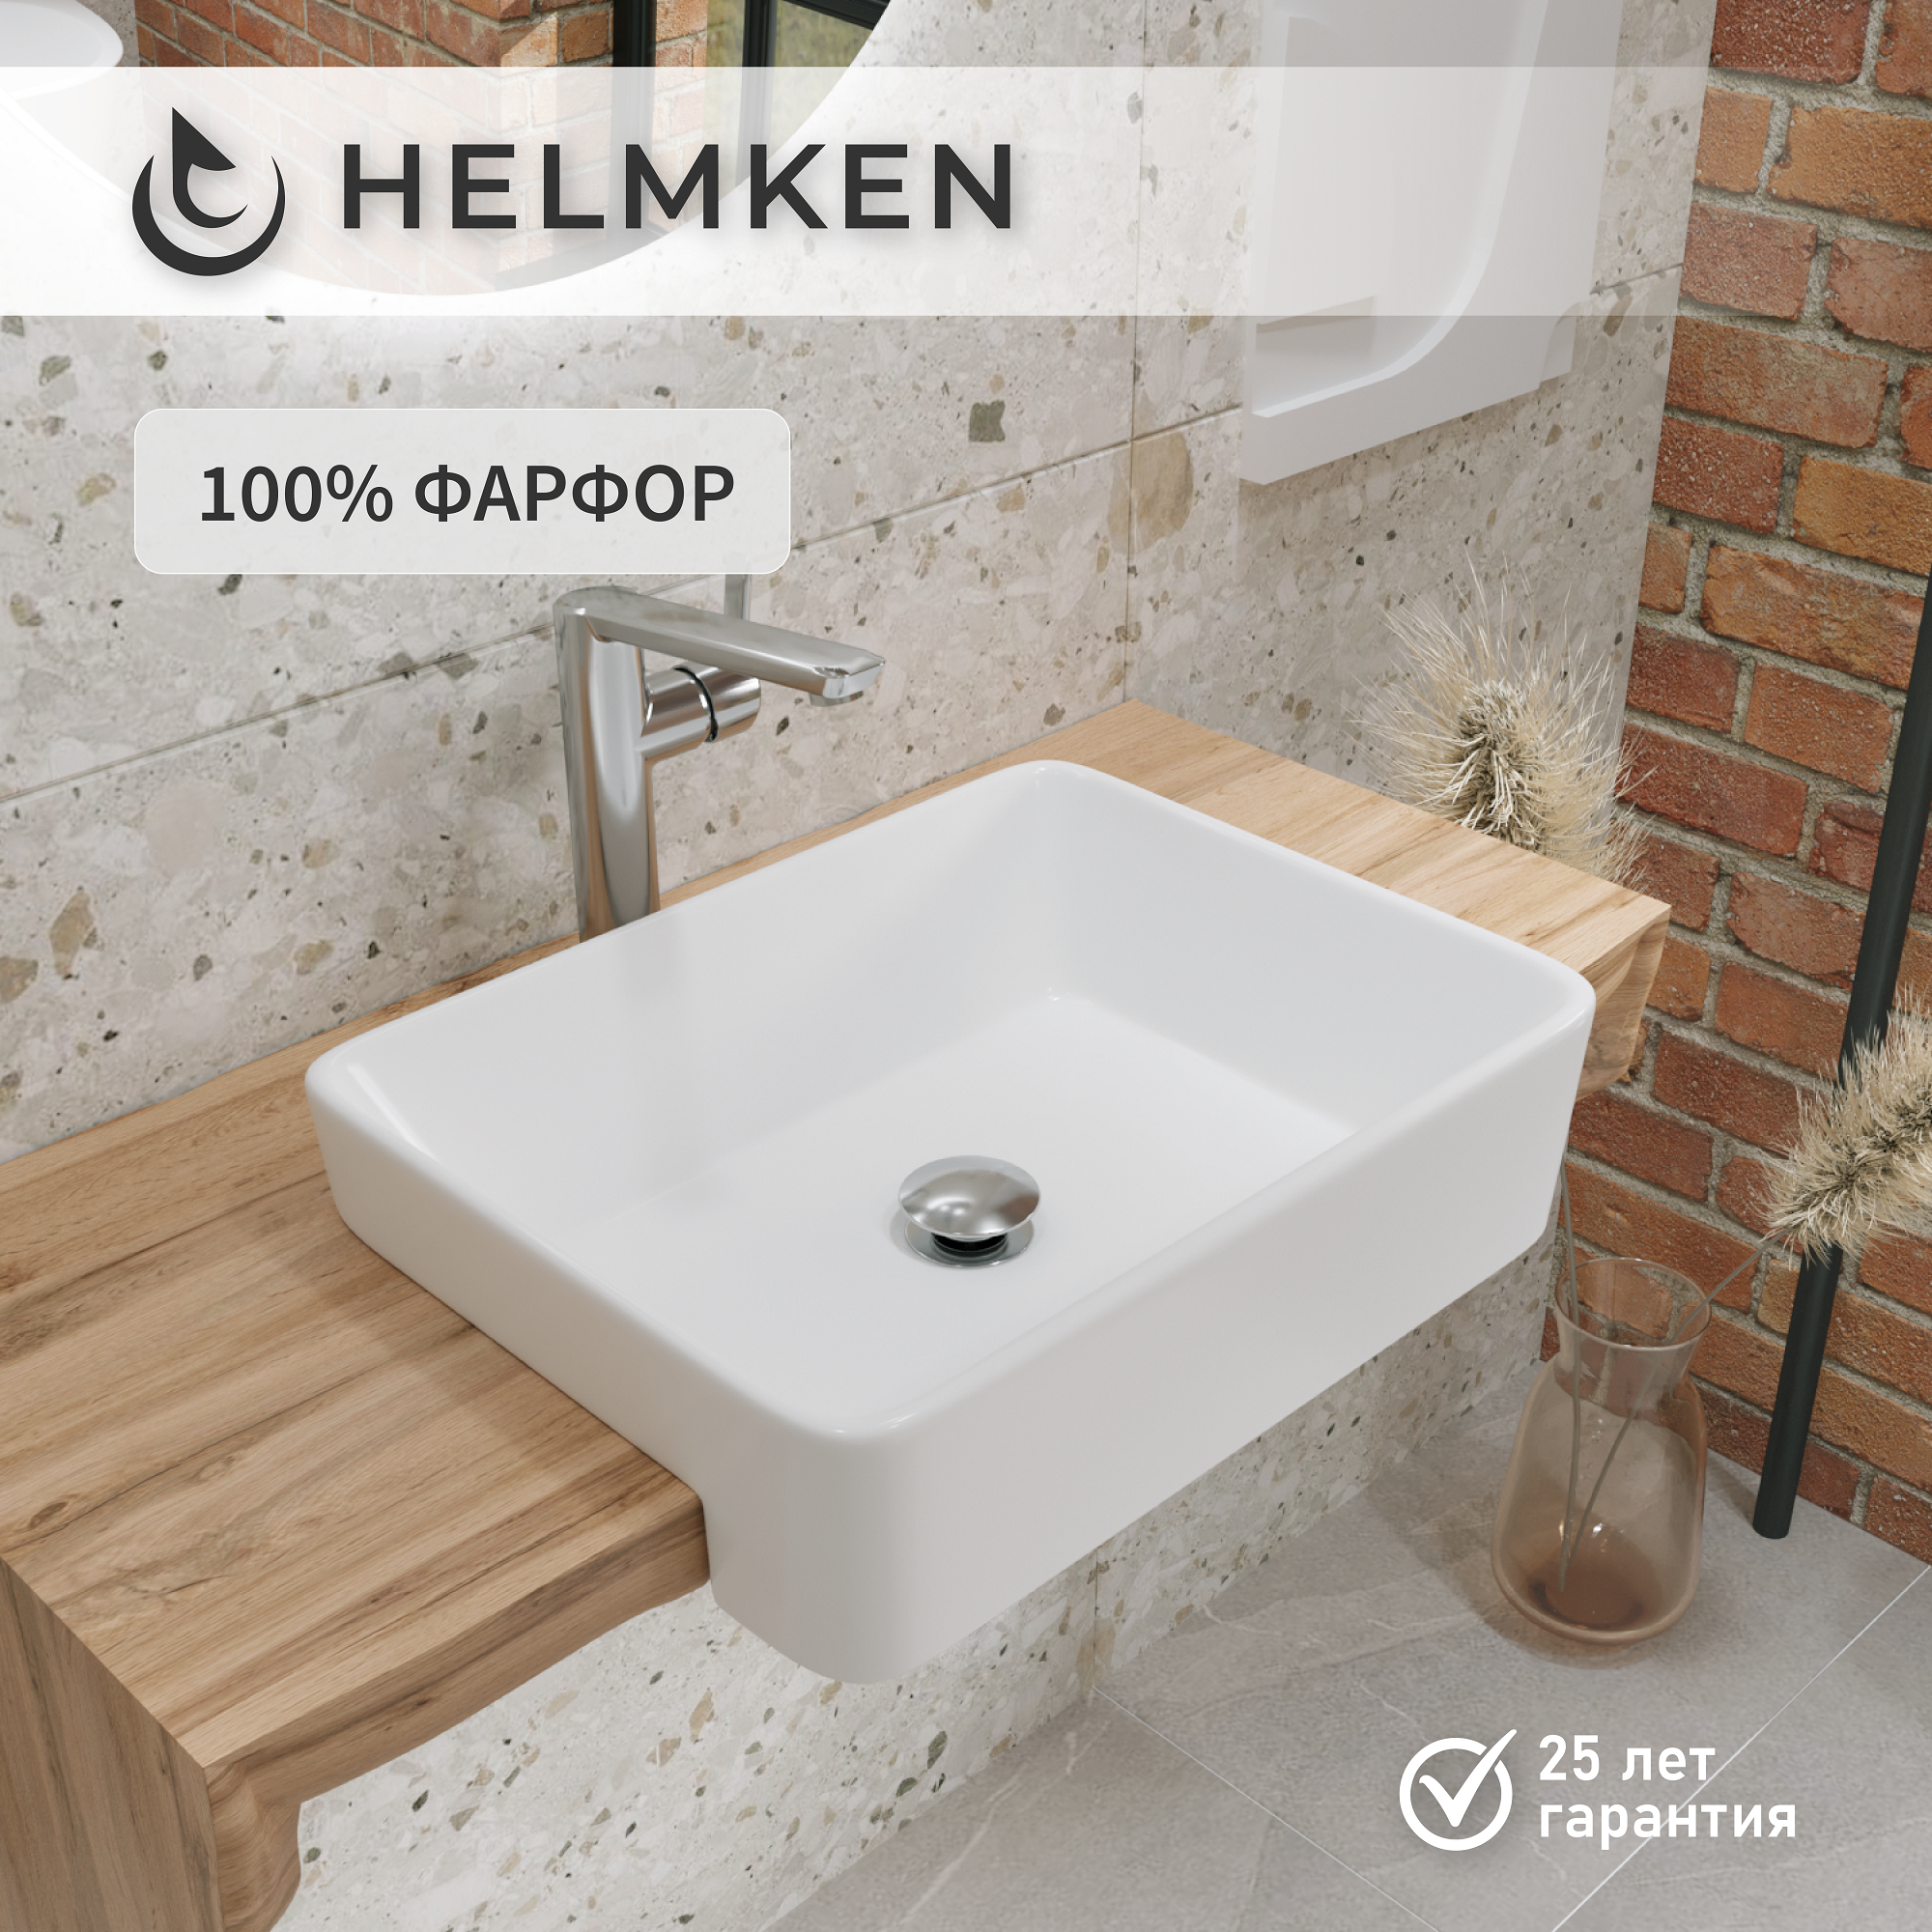 Накладная раковина в ванную Helmken 67548000 комплект 2 в 1: умывальник прямоугольный 48 см, донный клапан click-clack в цвете белый, гарантия 25 лет